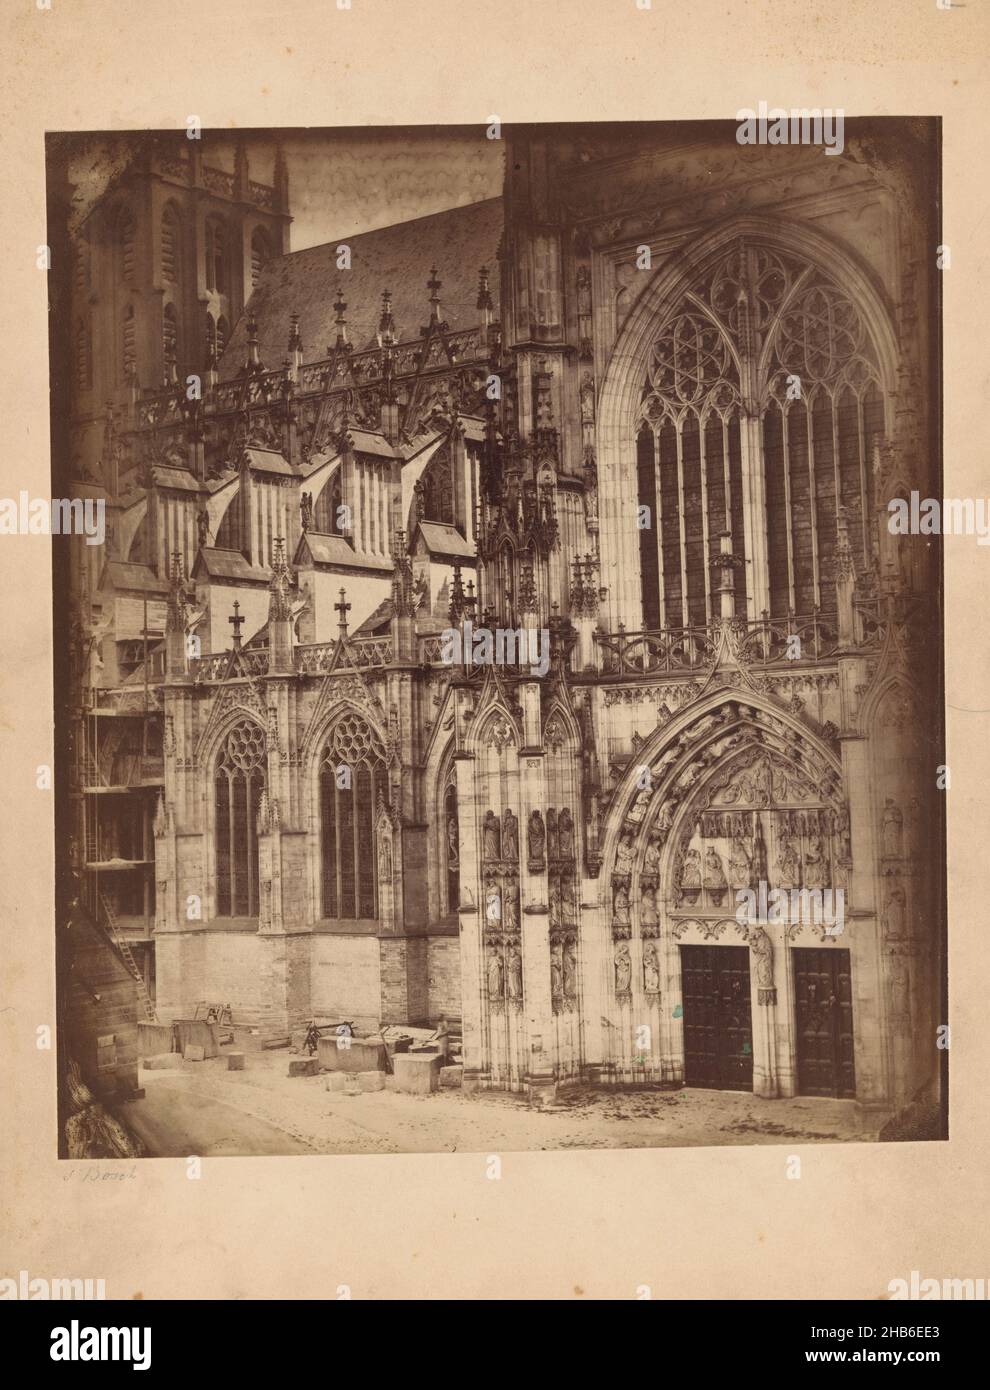 Extérieur du portail sud de la cathédrale Saint-Jean à 's-Hertogenbosch, Antonius Godefridus Schull (attribué à), Den Bosch, c.1865 - c.1875, carton, imprimé albumine, hauteur 235 mm × largeur 205 mm Banque D'Images